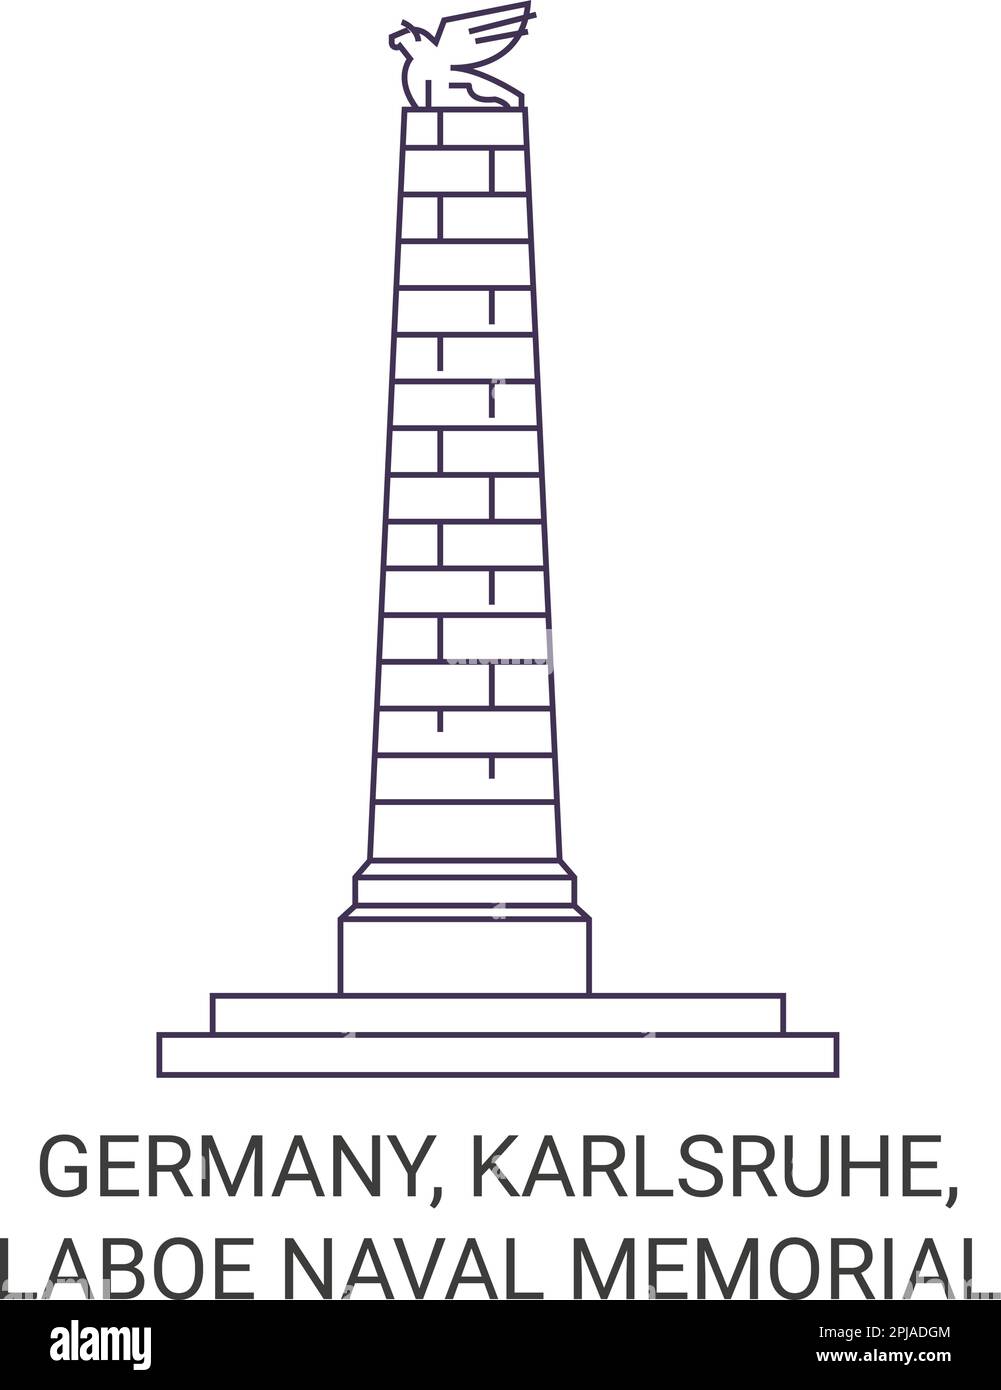 Deutschland, Karlsruhe, Laboe Naval Memorial Reise-Wahrzeichen-Vektordarstellung Stock Vektor